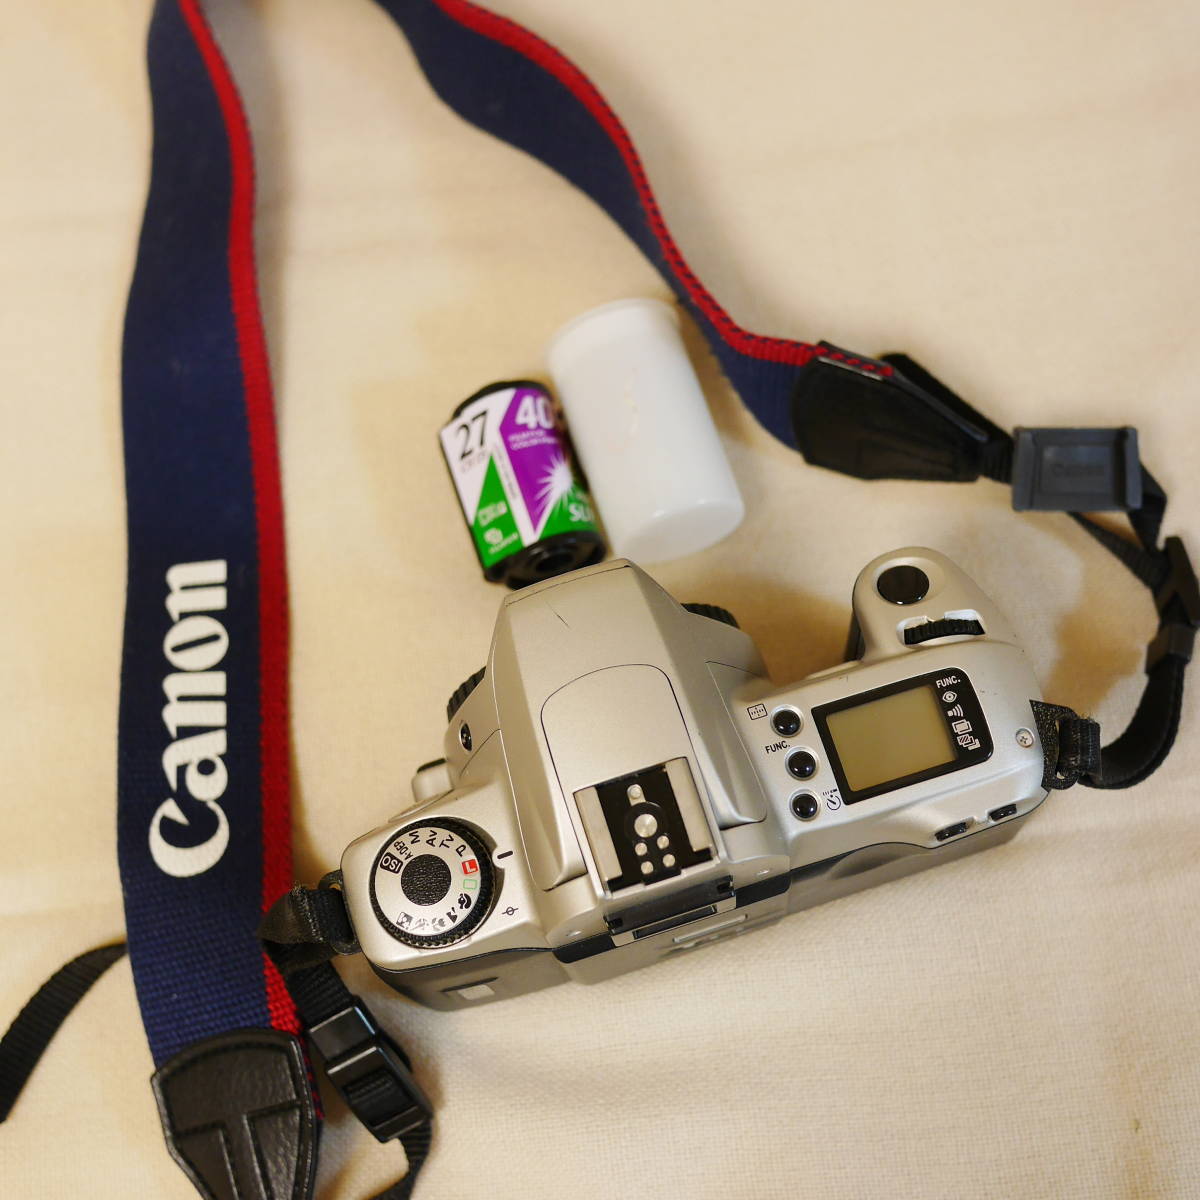 【送料無料】Canon EOS KISS Ⅲ キャノン フィルムカメラ一眼レフ＋Canonズームレンズ EF28-105mm F3.5-4.5 II  USM ZOOM LENS ULTRA SONIC